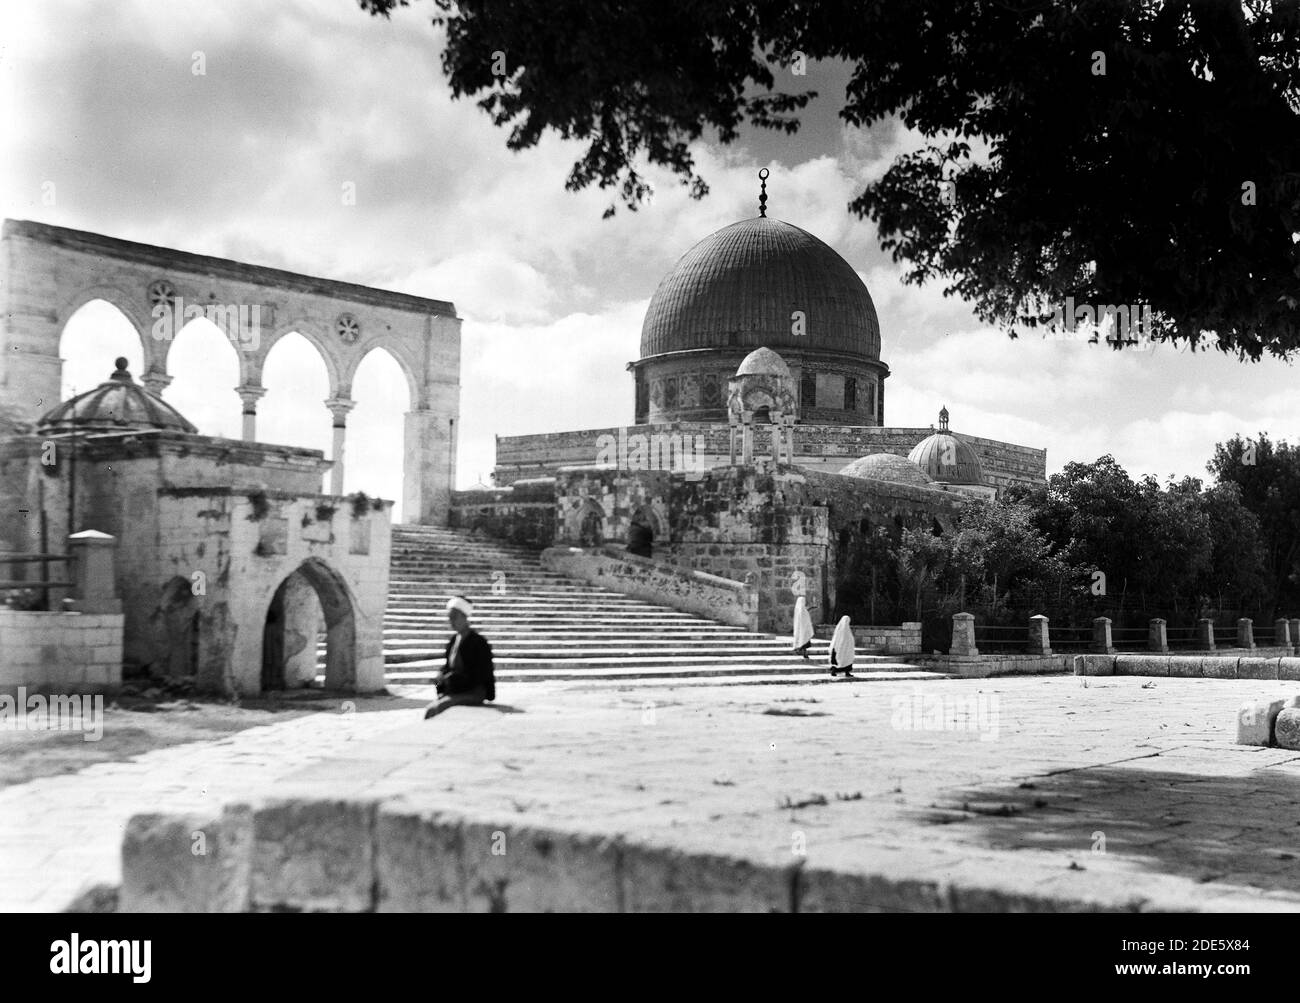 Légende originale : Dome of the Rock. Extérieurs plus près avec vue générale sur l'arbre - emplacement: Jérusalem ca. 1944 Banque D'Images